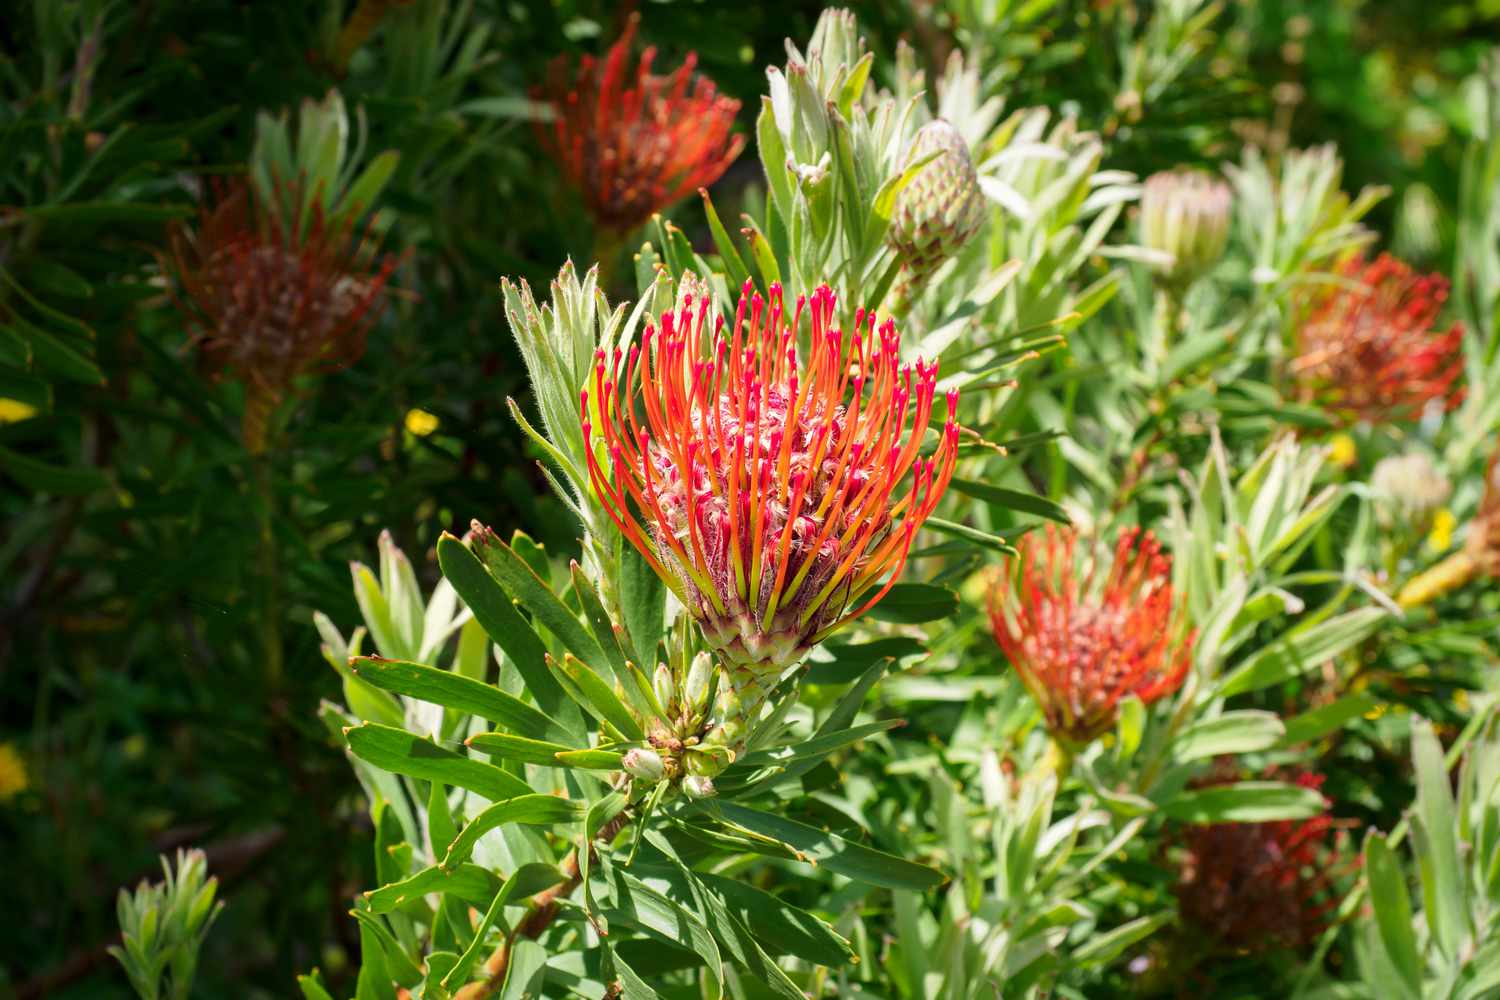 Protea-Pflanze mit roten, stacheligen Hochblättern, umgeben von immergrünen Blättern